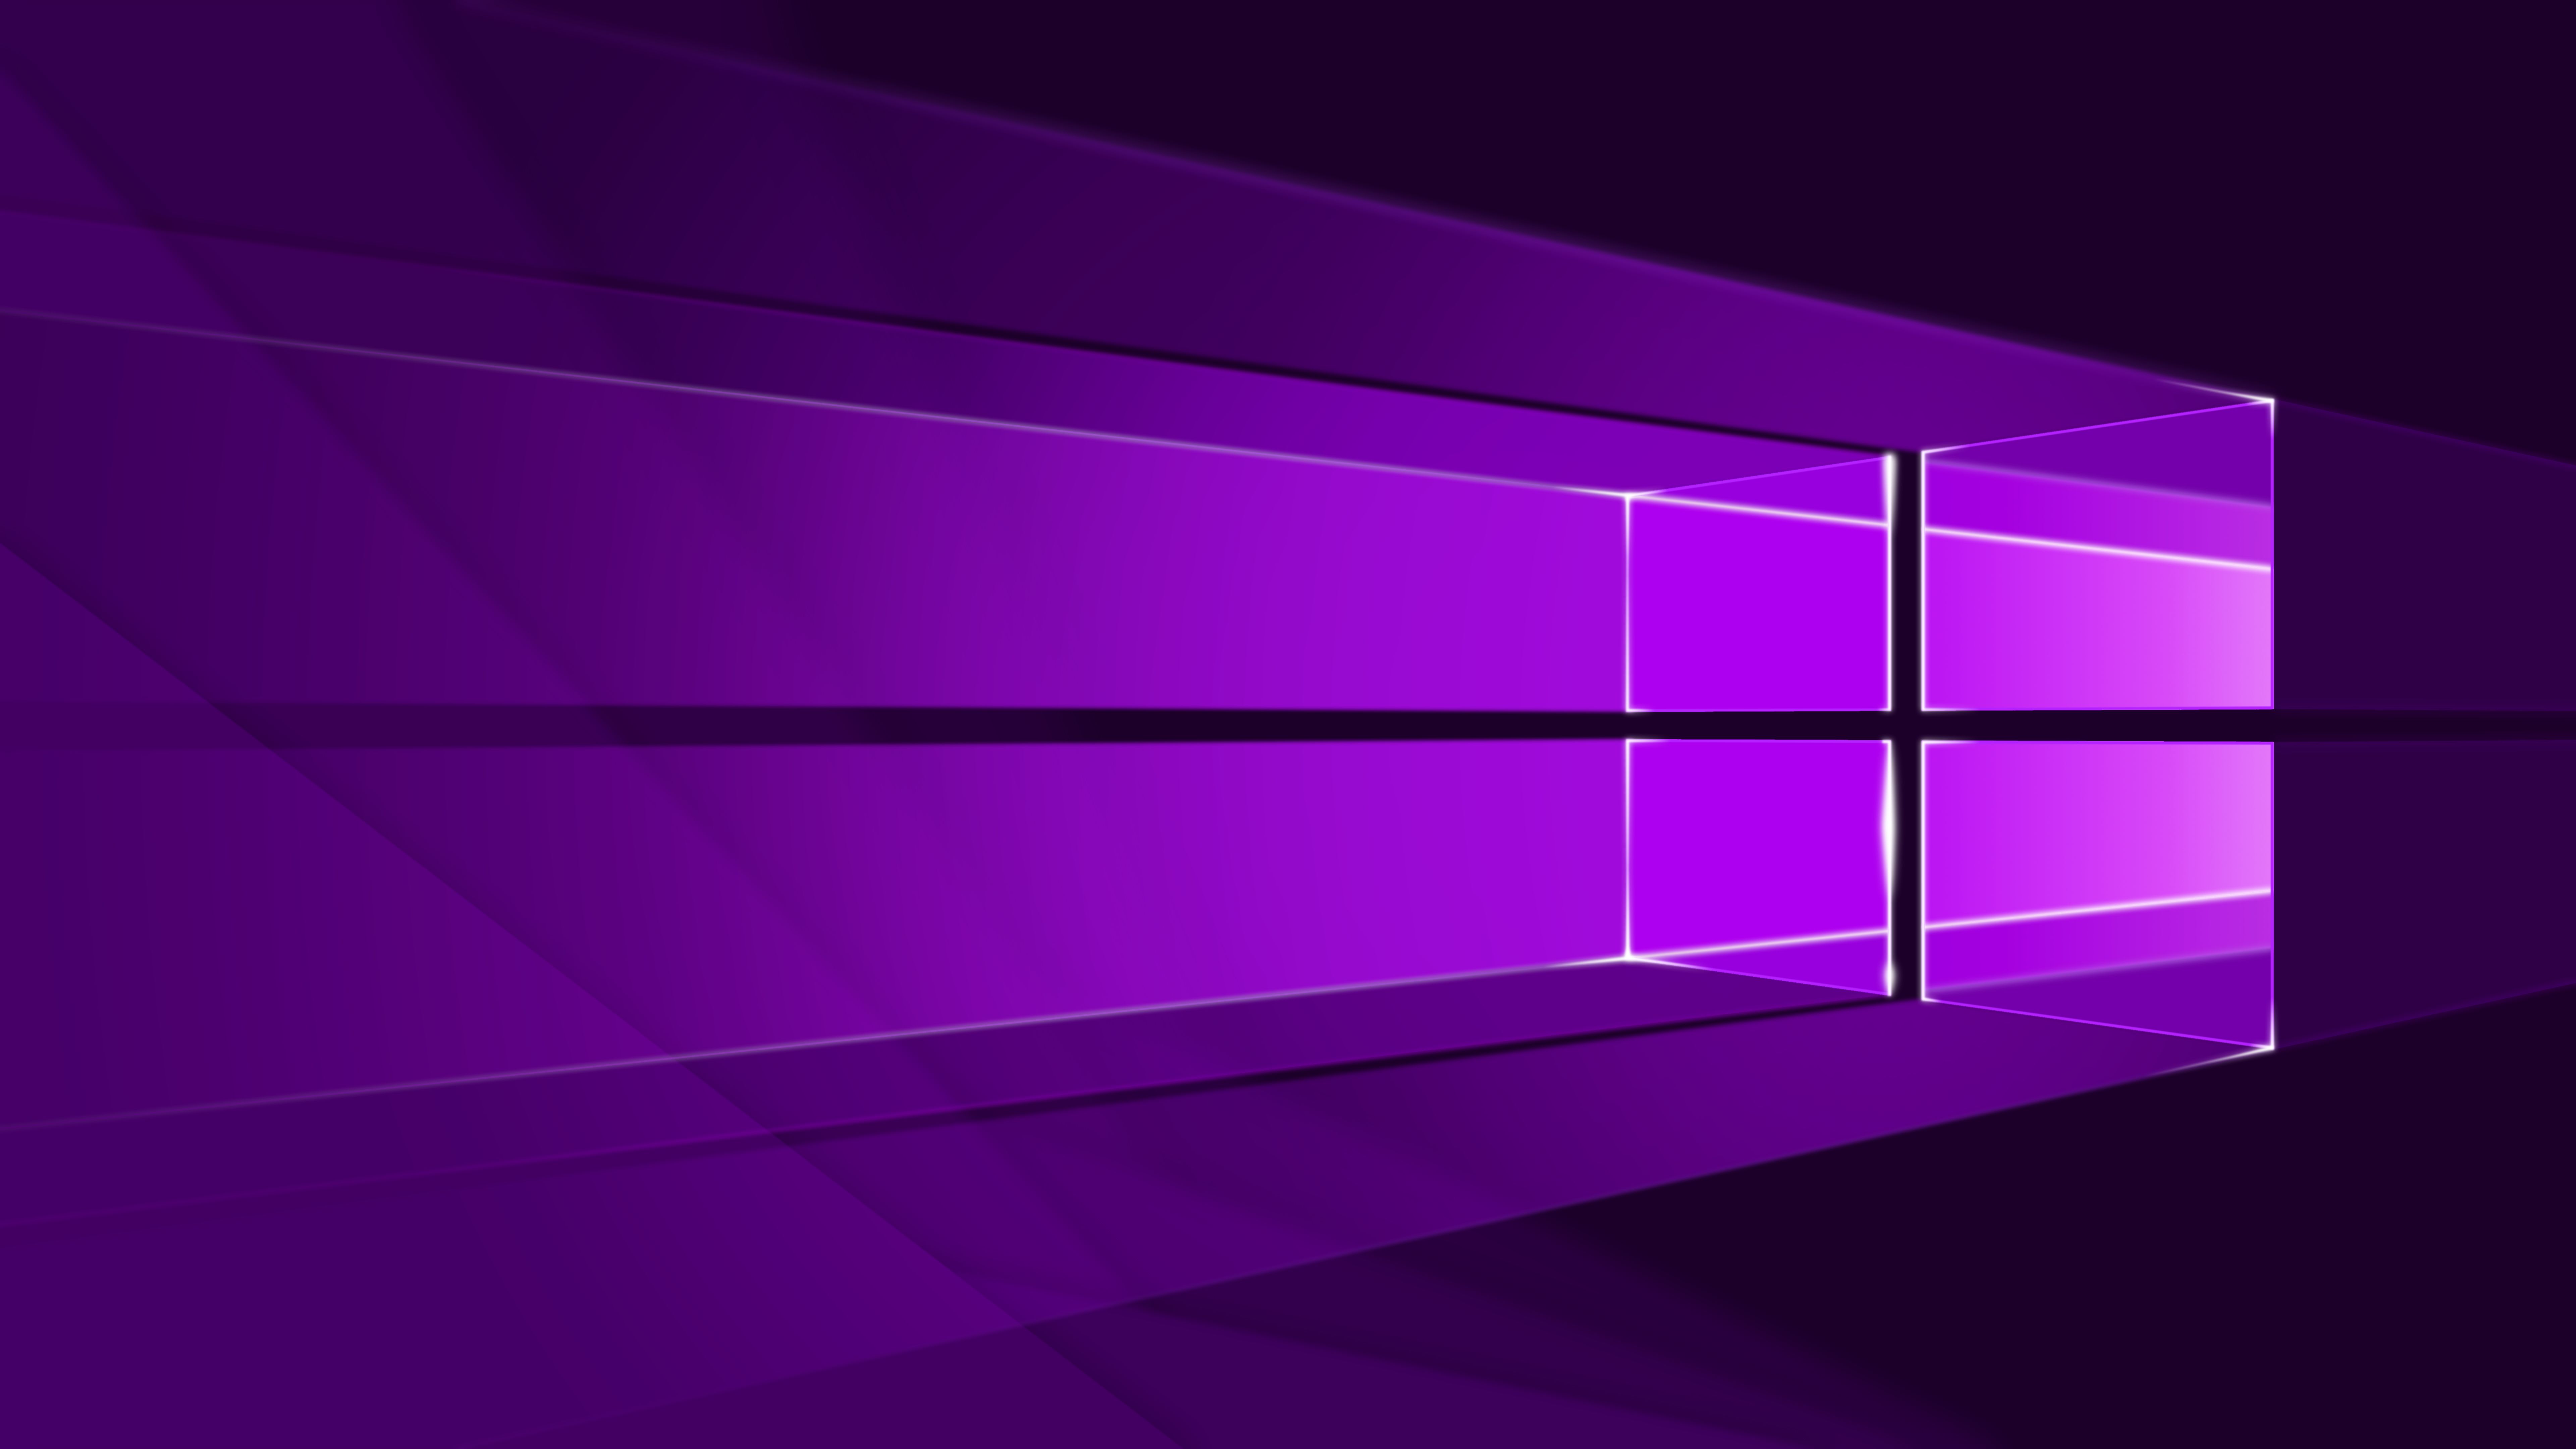 Windows 10 1920 x 1080 HD Wallpaper